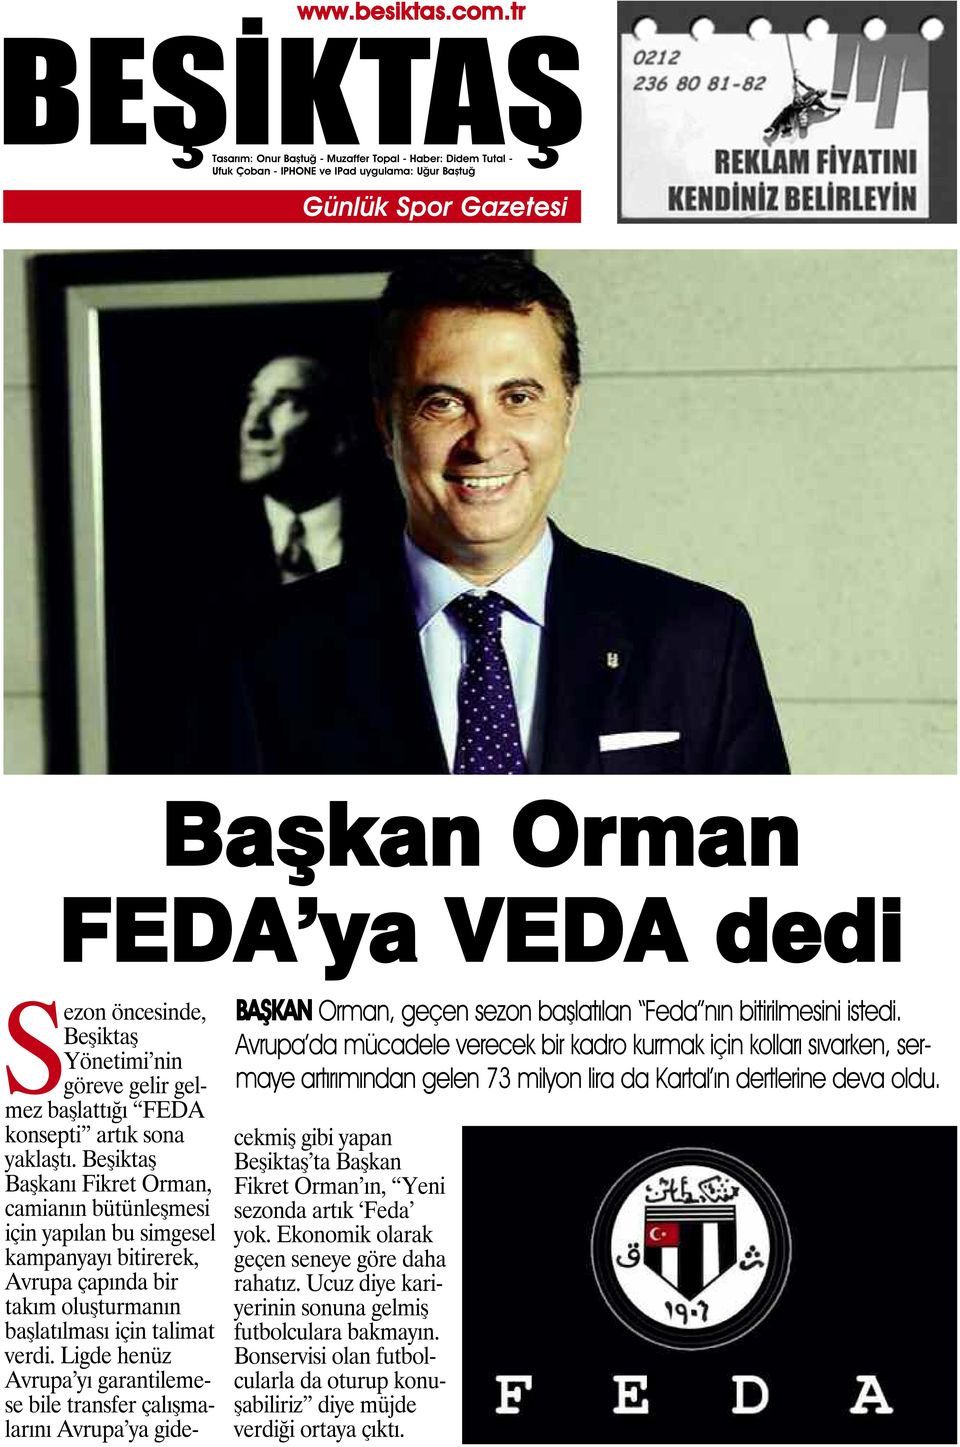 Sezon öncesinde, Beşiktaş Yönetimi nin göreve gelir gelmez başlattığı FEDA konsepti artık sona yaklaştı.